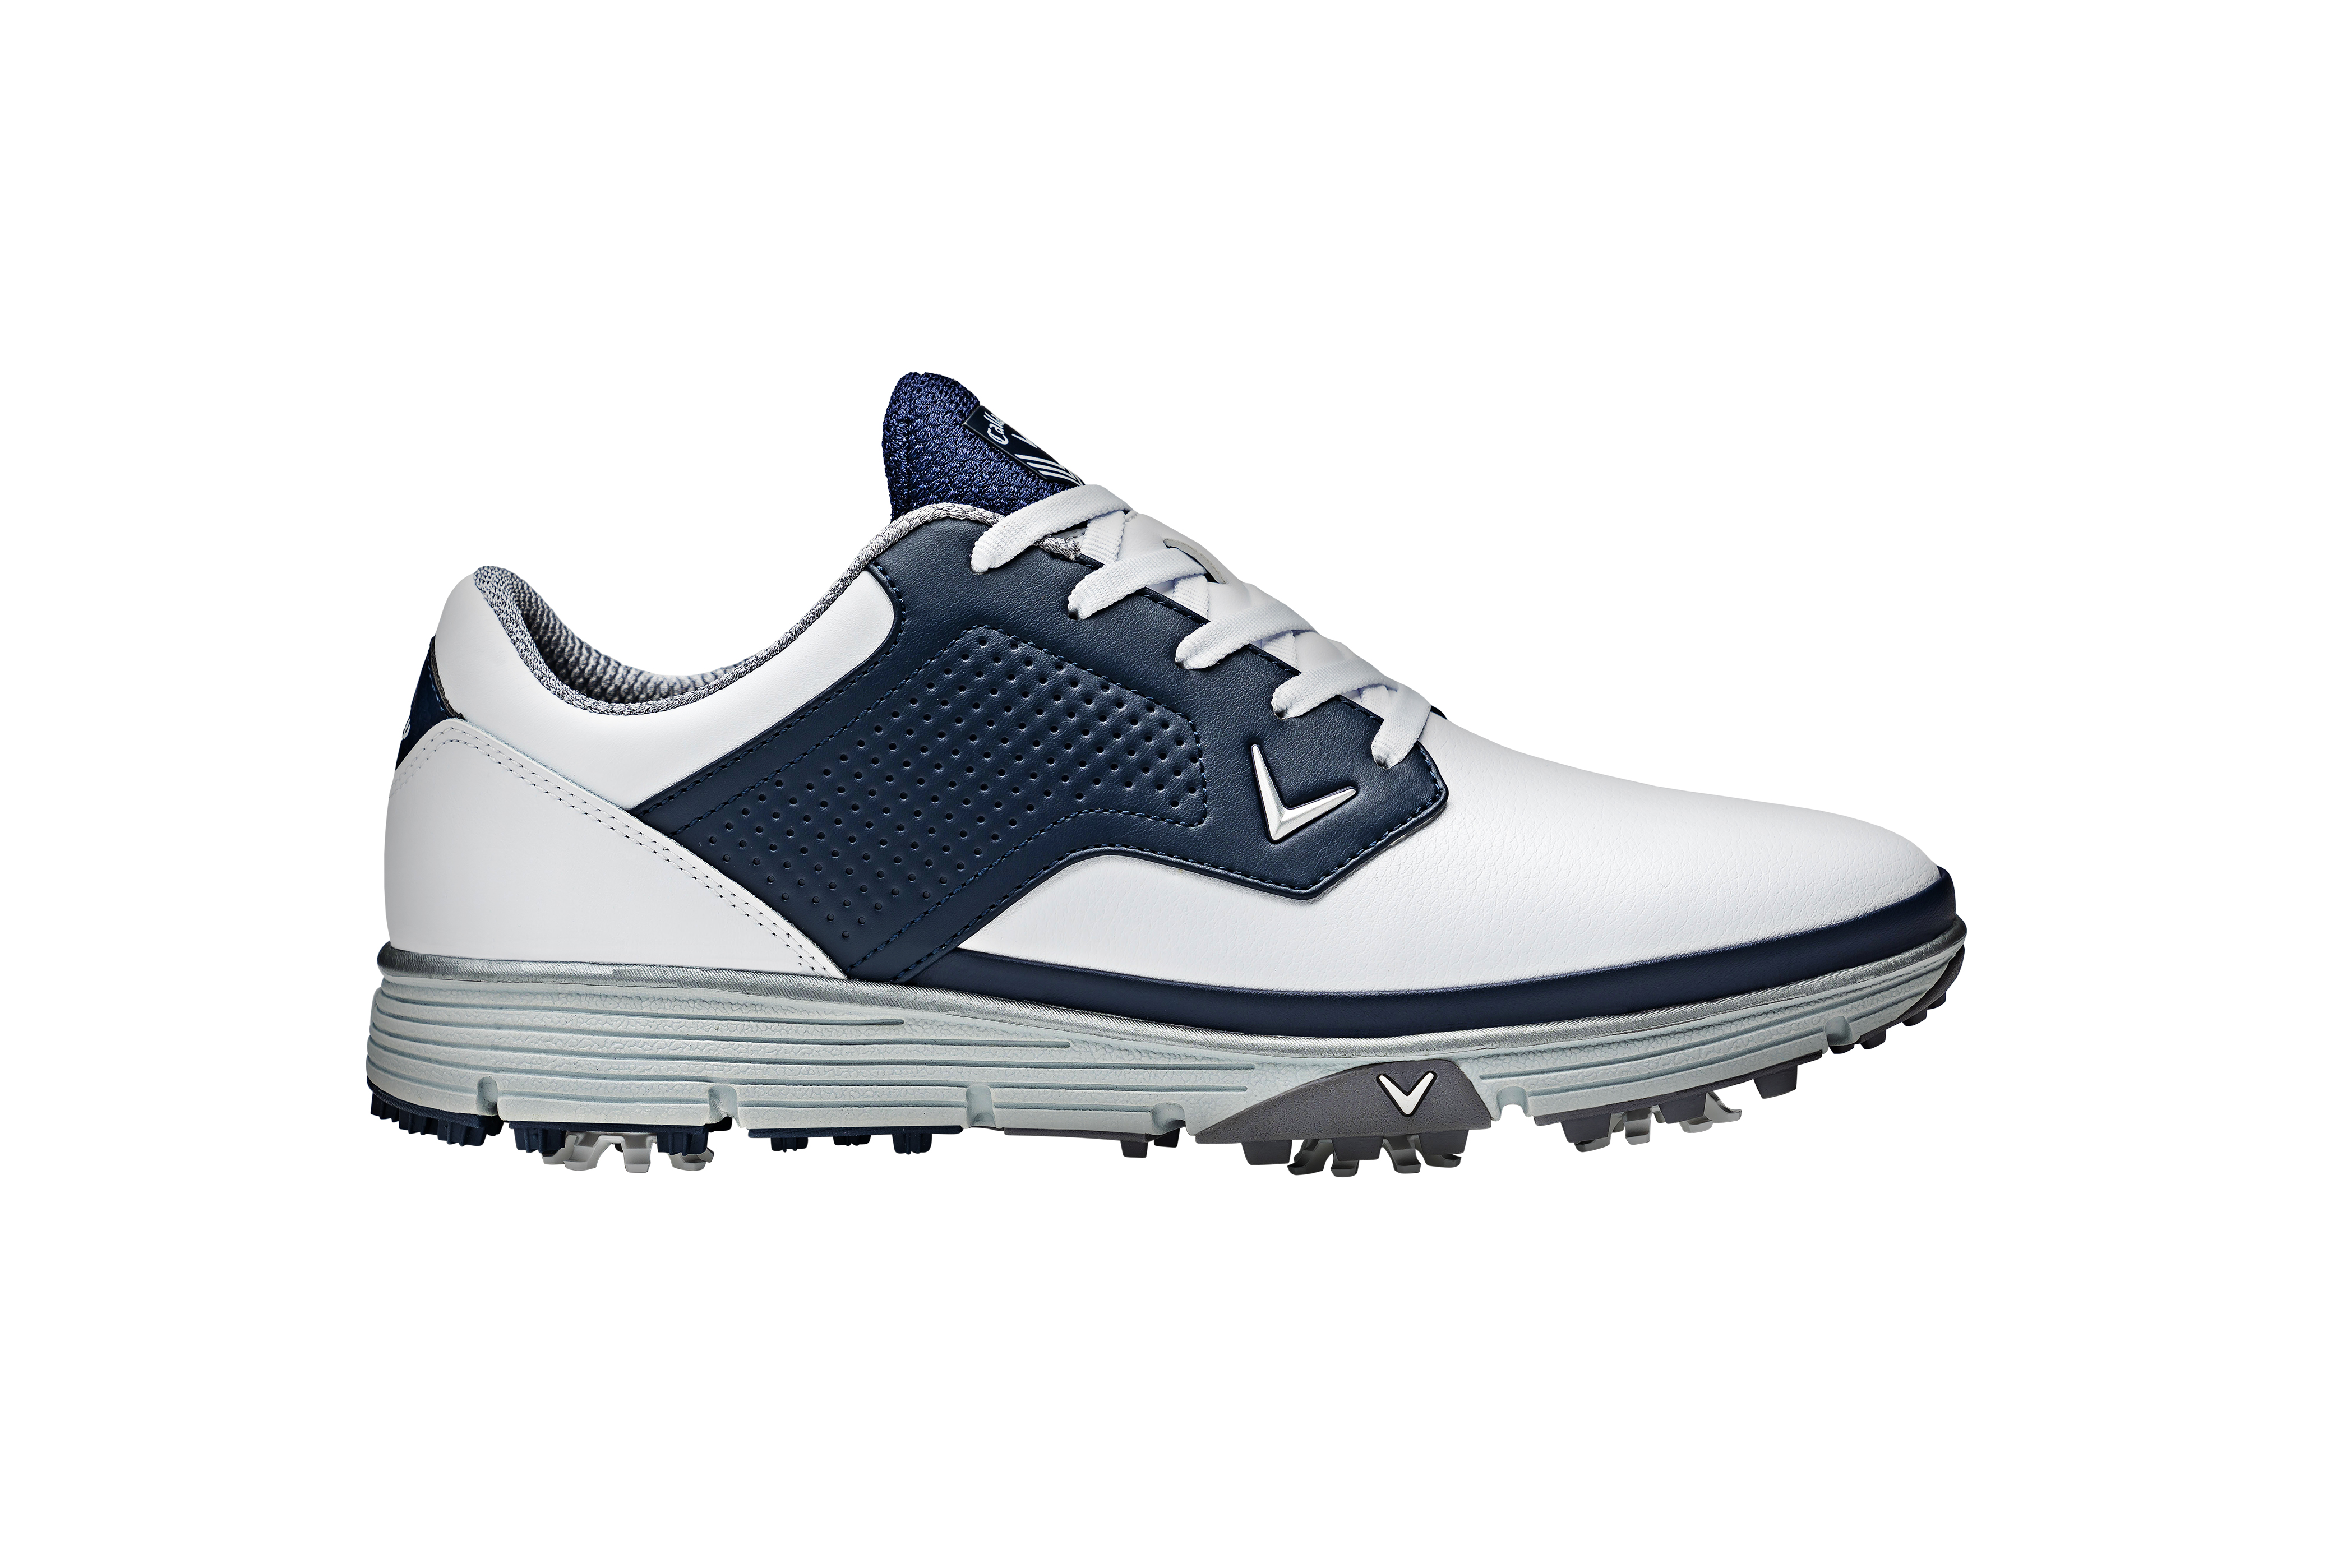 Callaway Mission pánské golfové boty, bílé/tmavě modré, vel. 11 UK